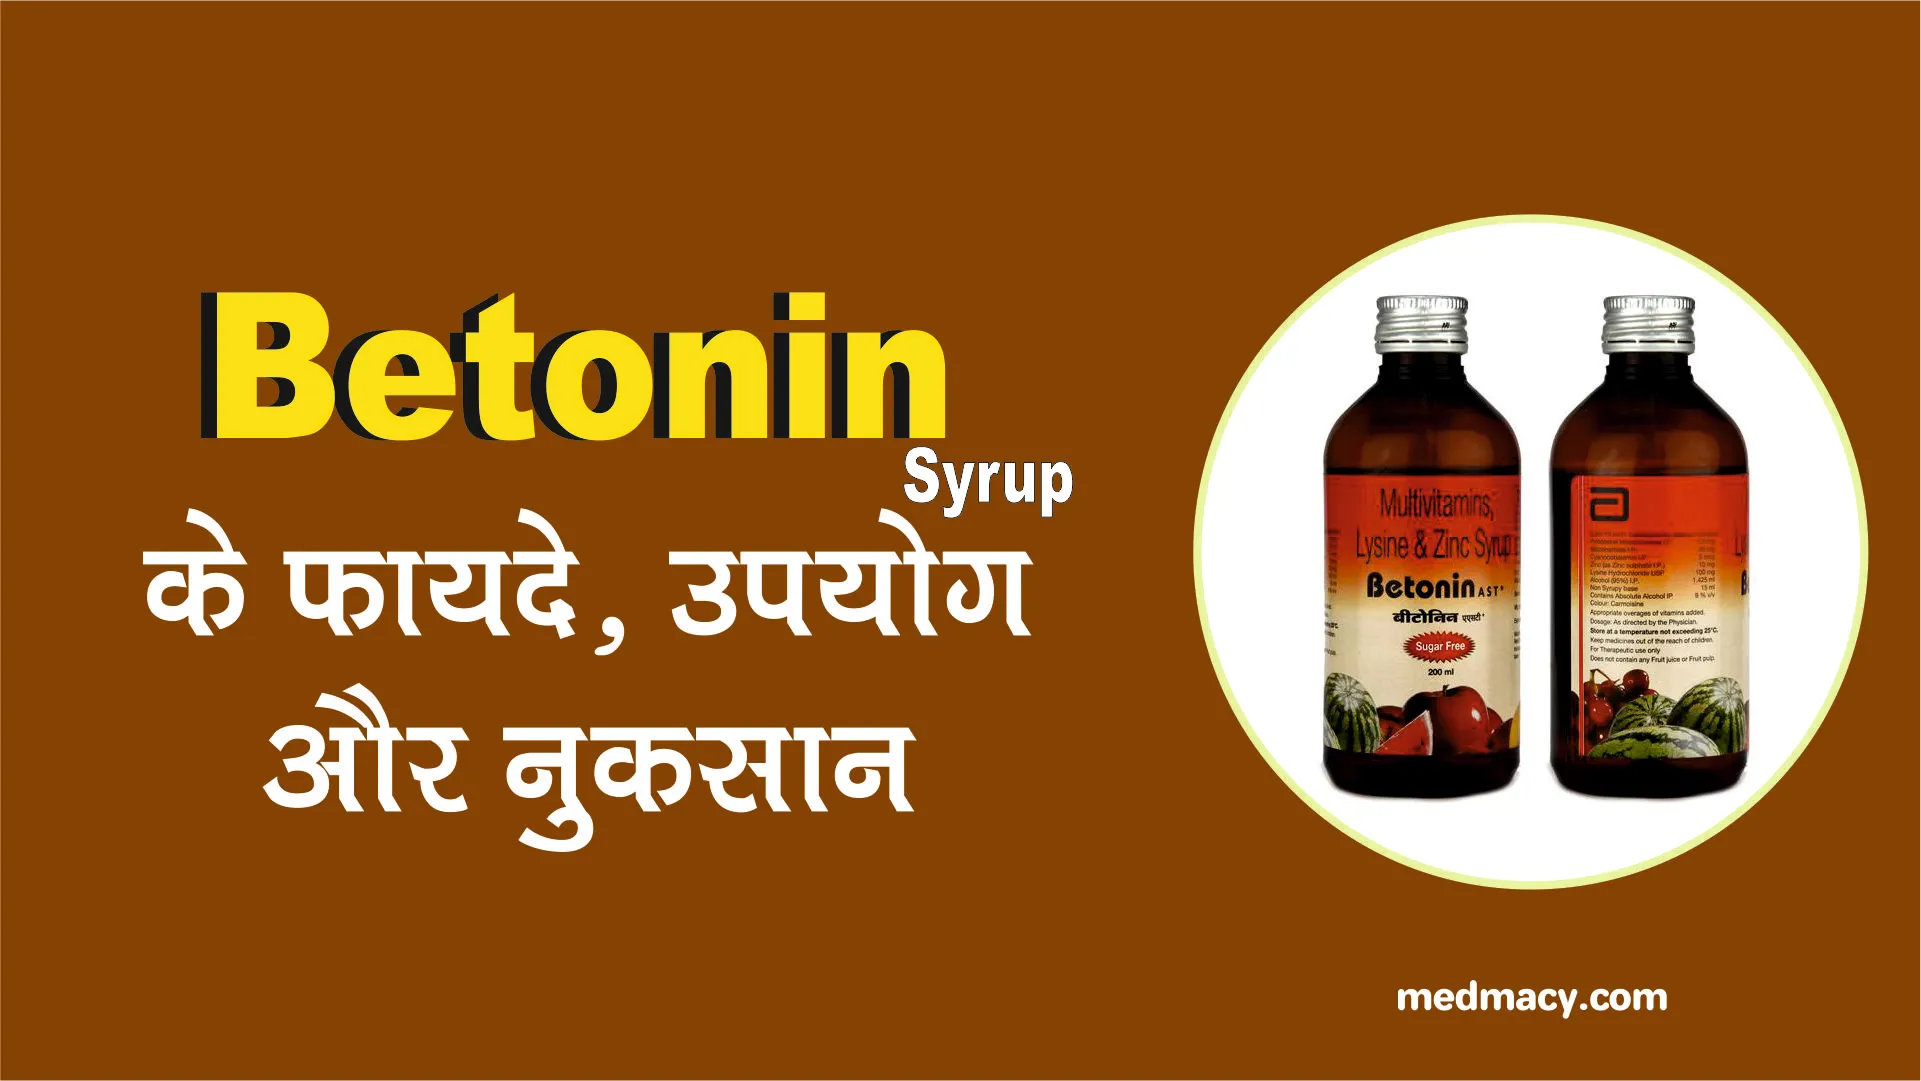 Betonin Syrup Uses in Hindi